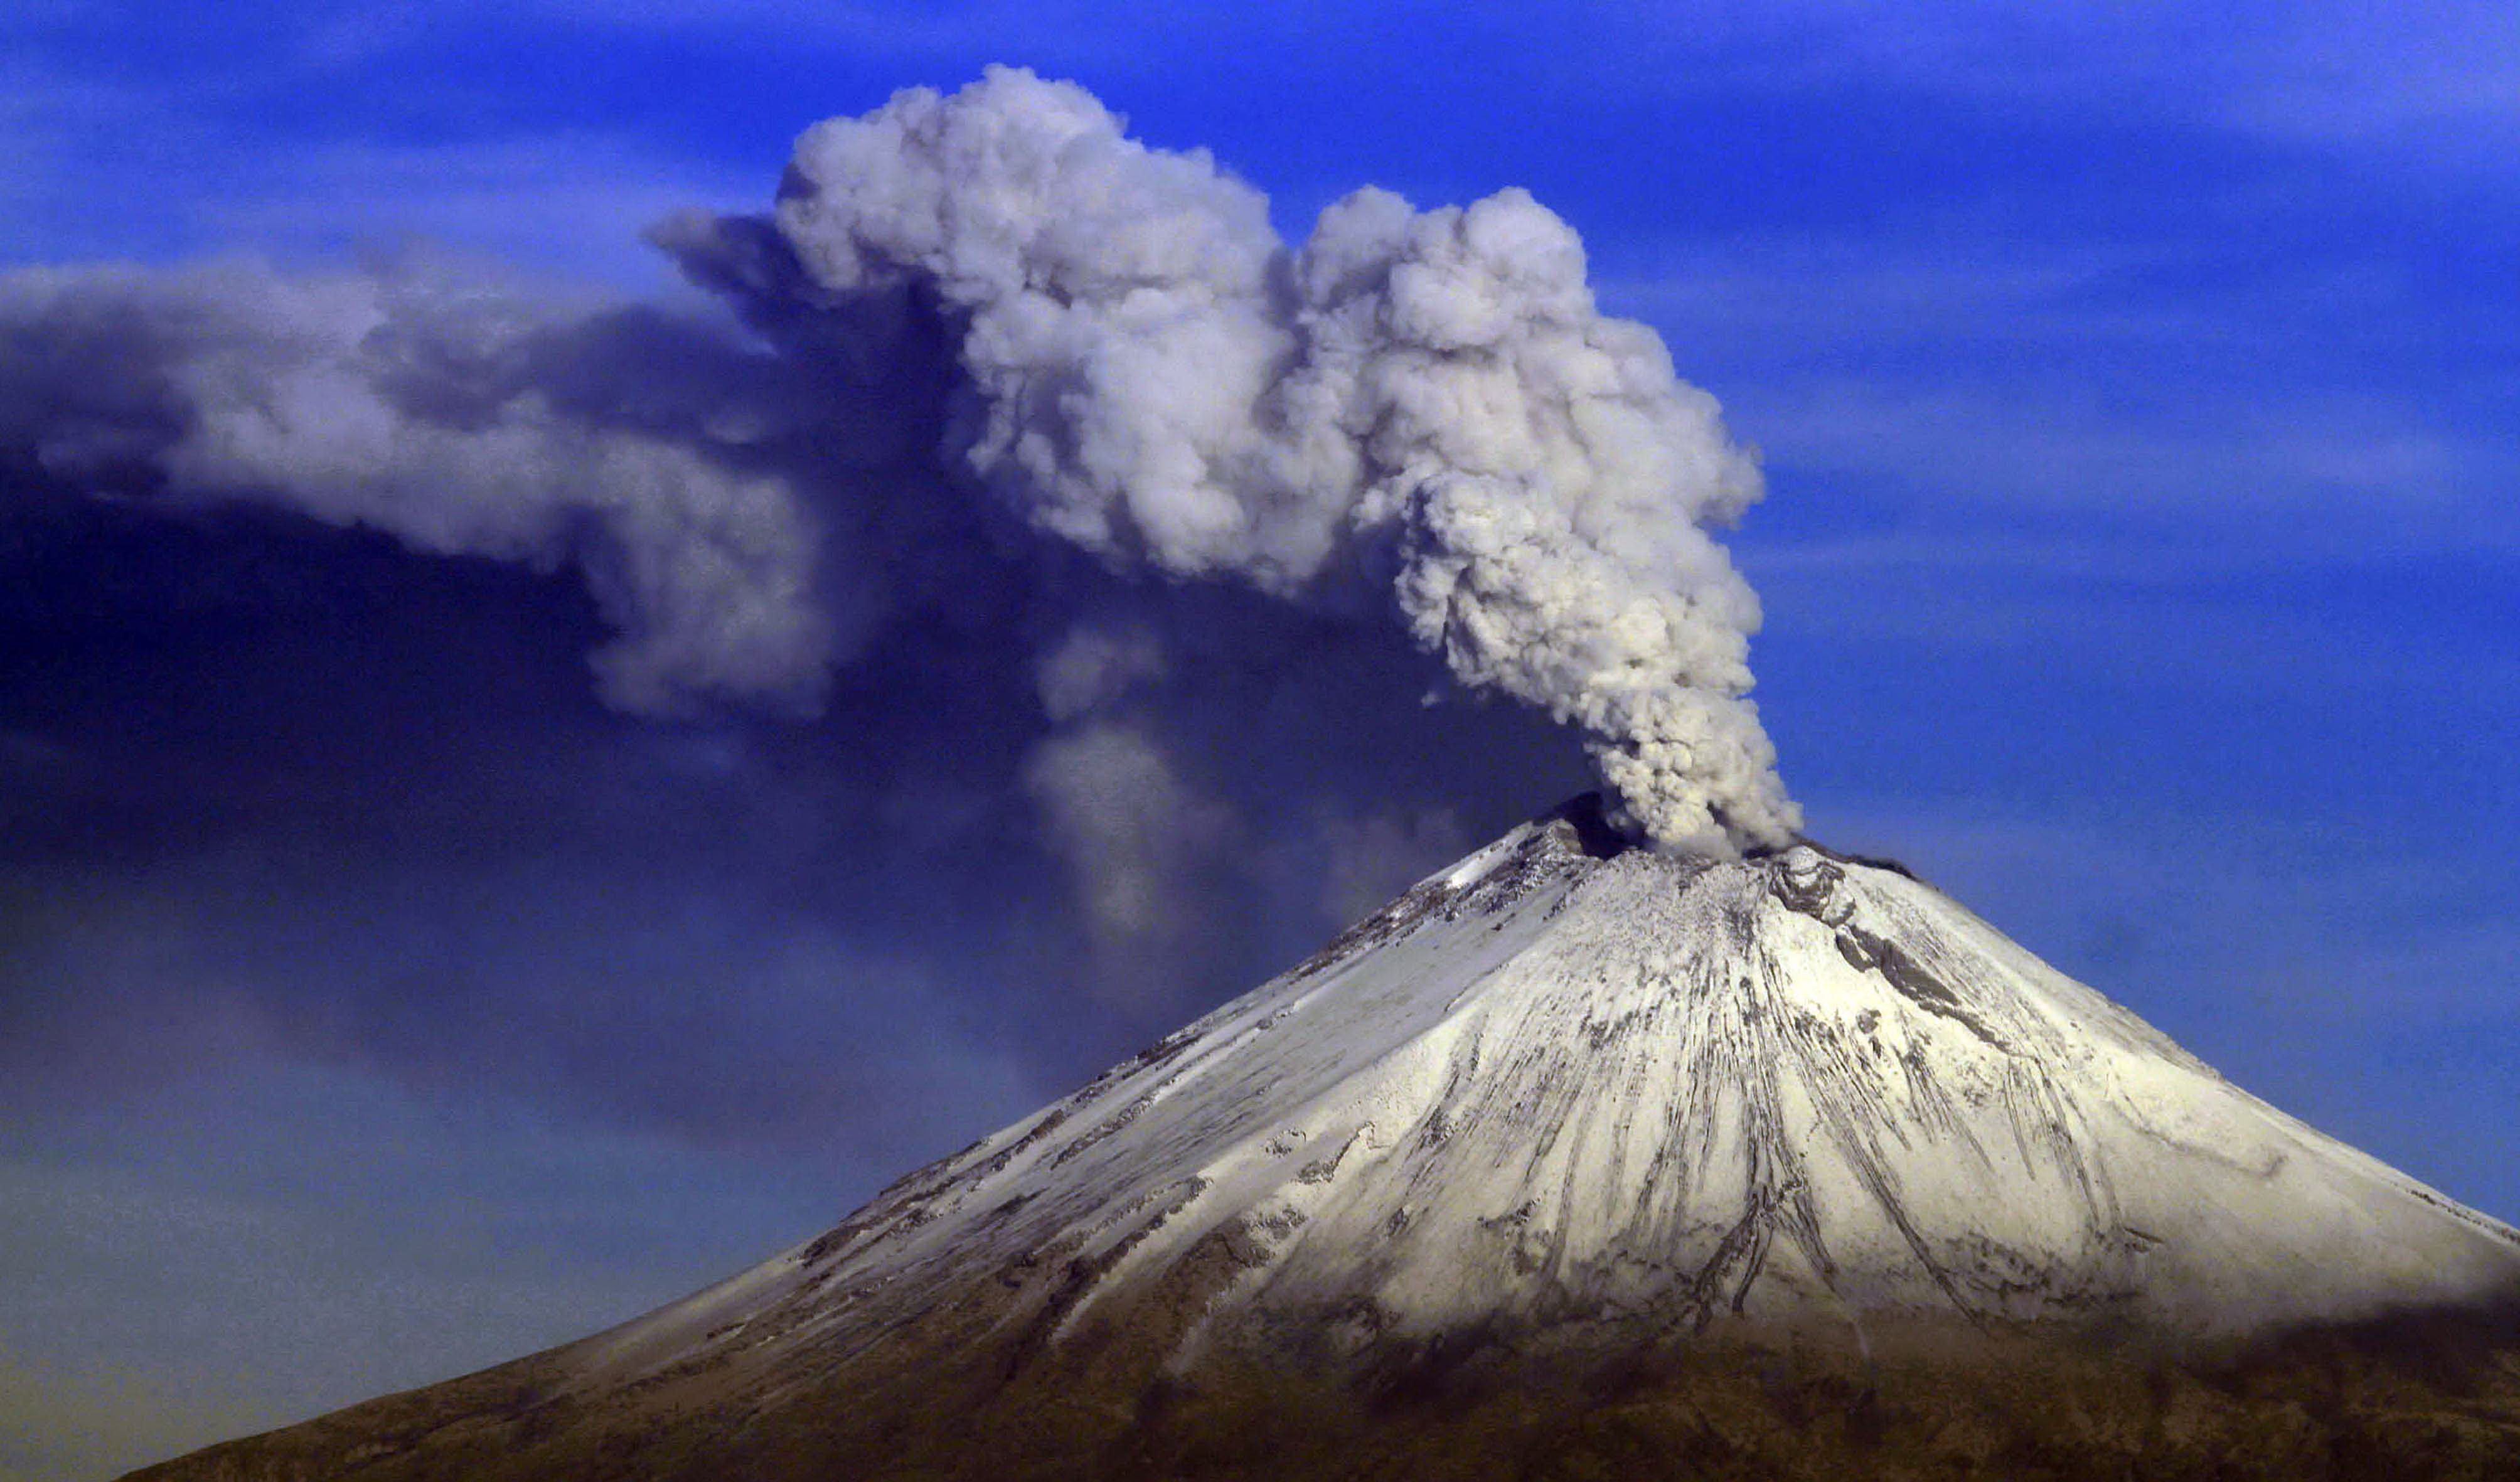 San Pedro Cholula recolecta 1.5 toneladas de ceniza volcánica